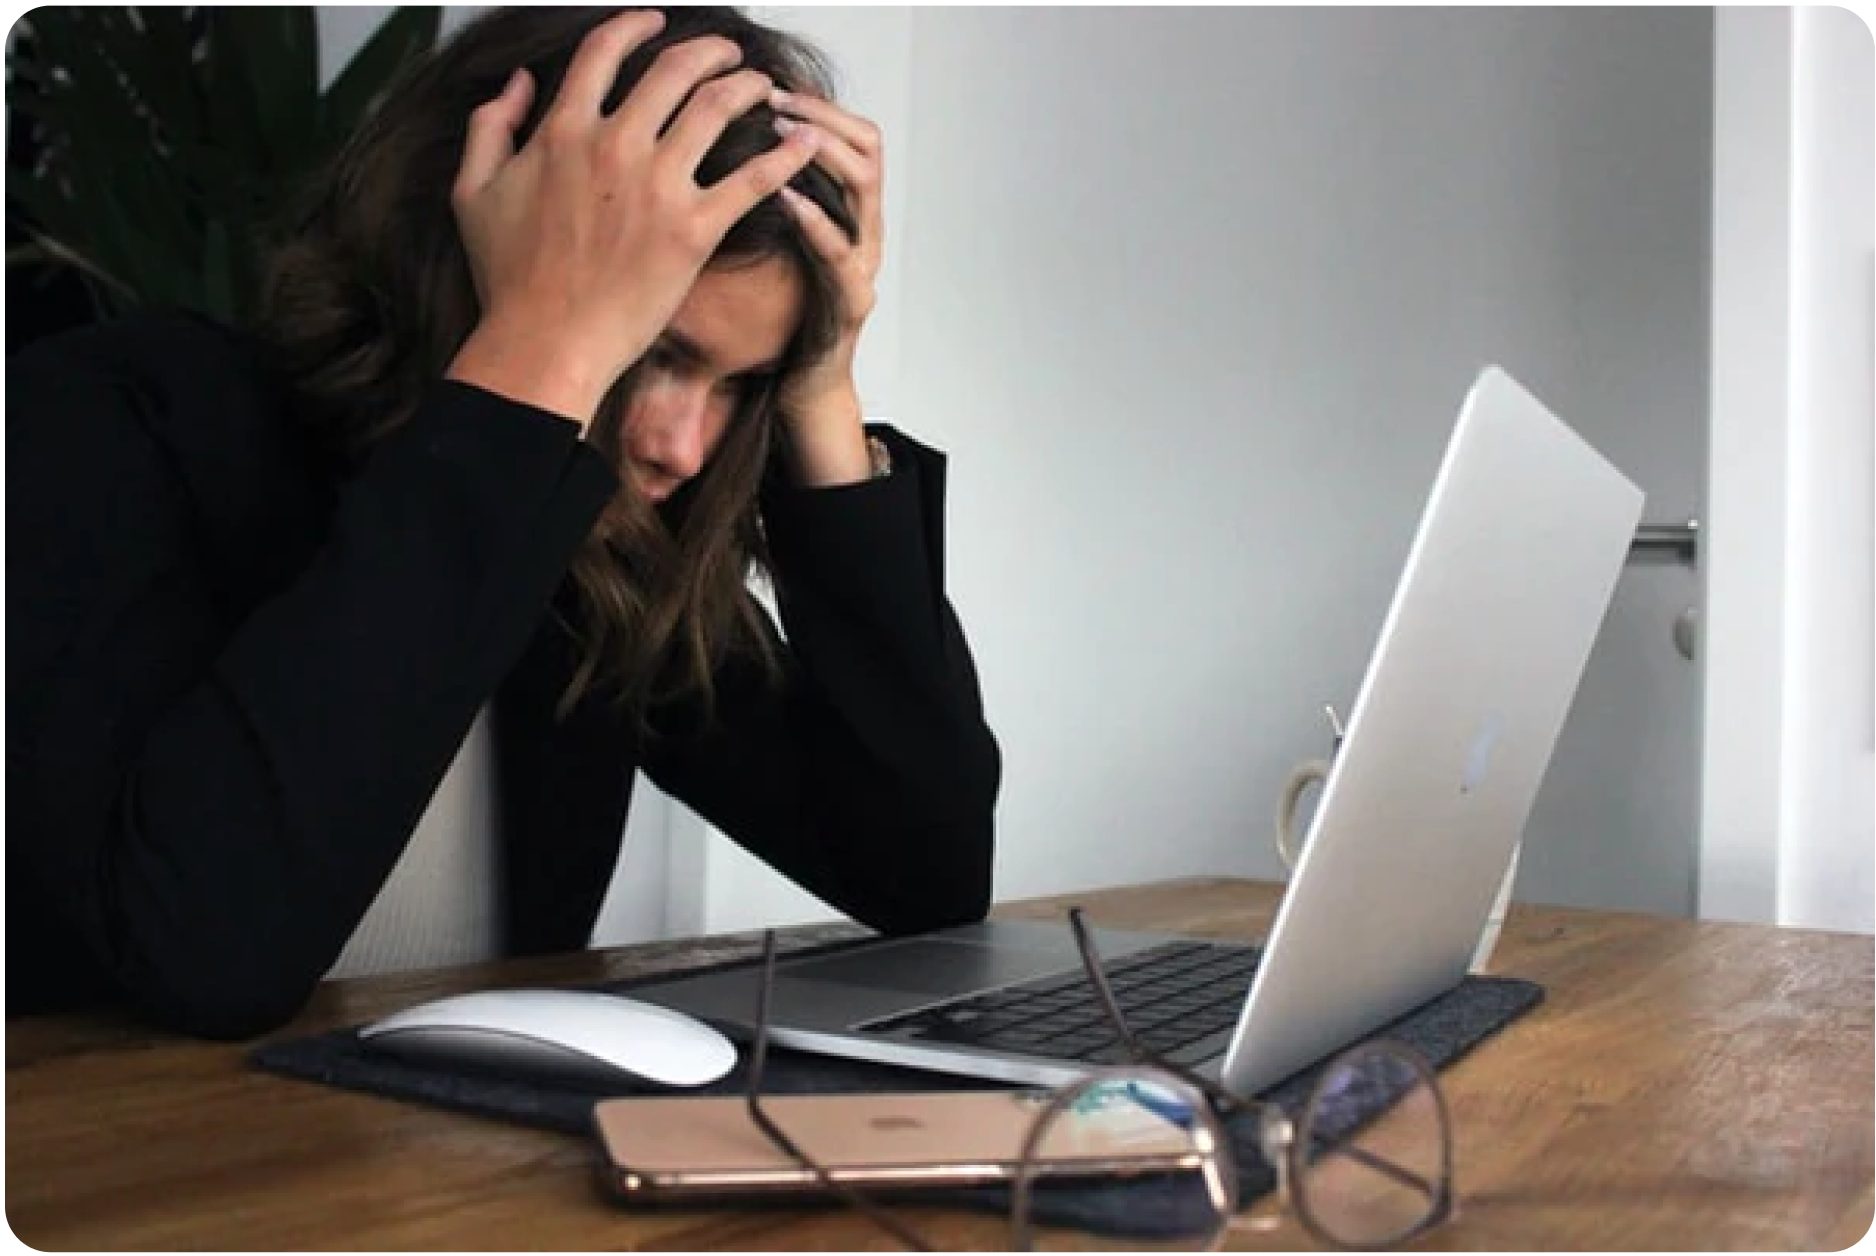 Verzweifelte Frau vor ihrem Laptop, sichtlich gestresst und von Schlafmangel gezeichnet, als Darstellung der körperlichen und emotionalen Belastung durch sauren Urin, der den pH-Wert des Körpers beeinflusst.